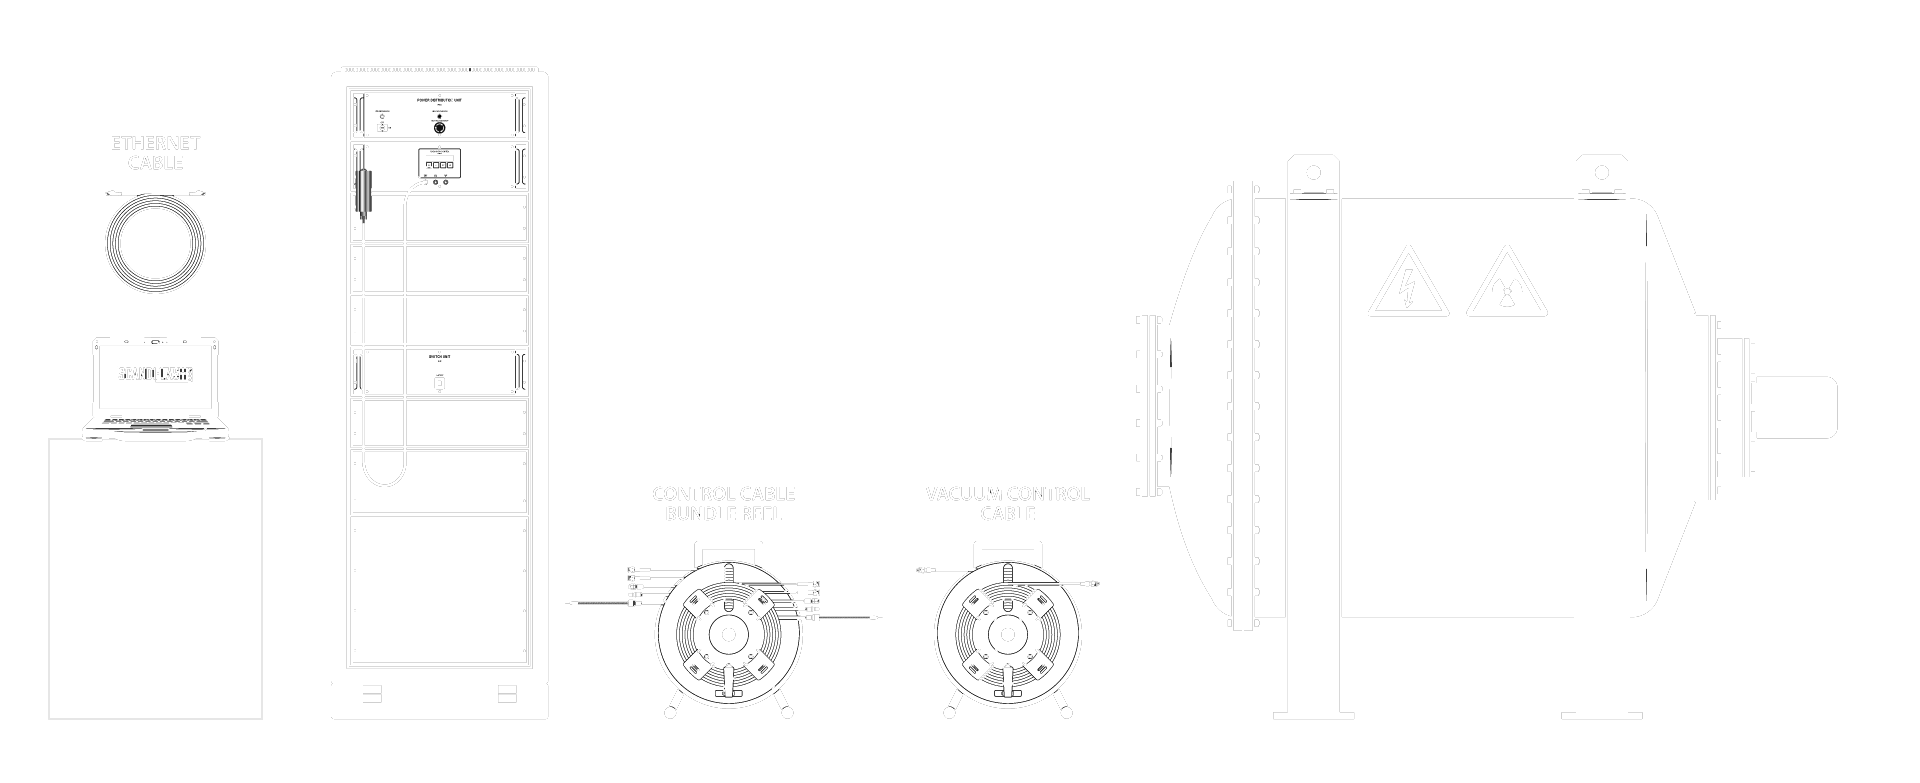 Scandiflash SCF1200 basic Flash X-ray System illustration.